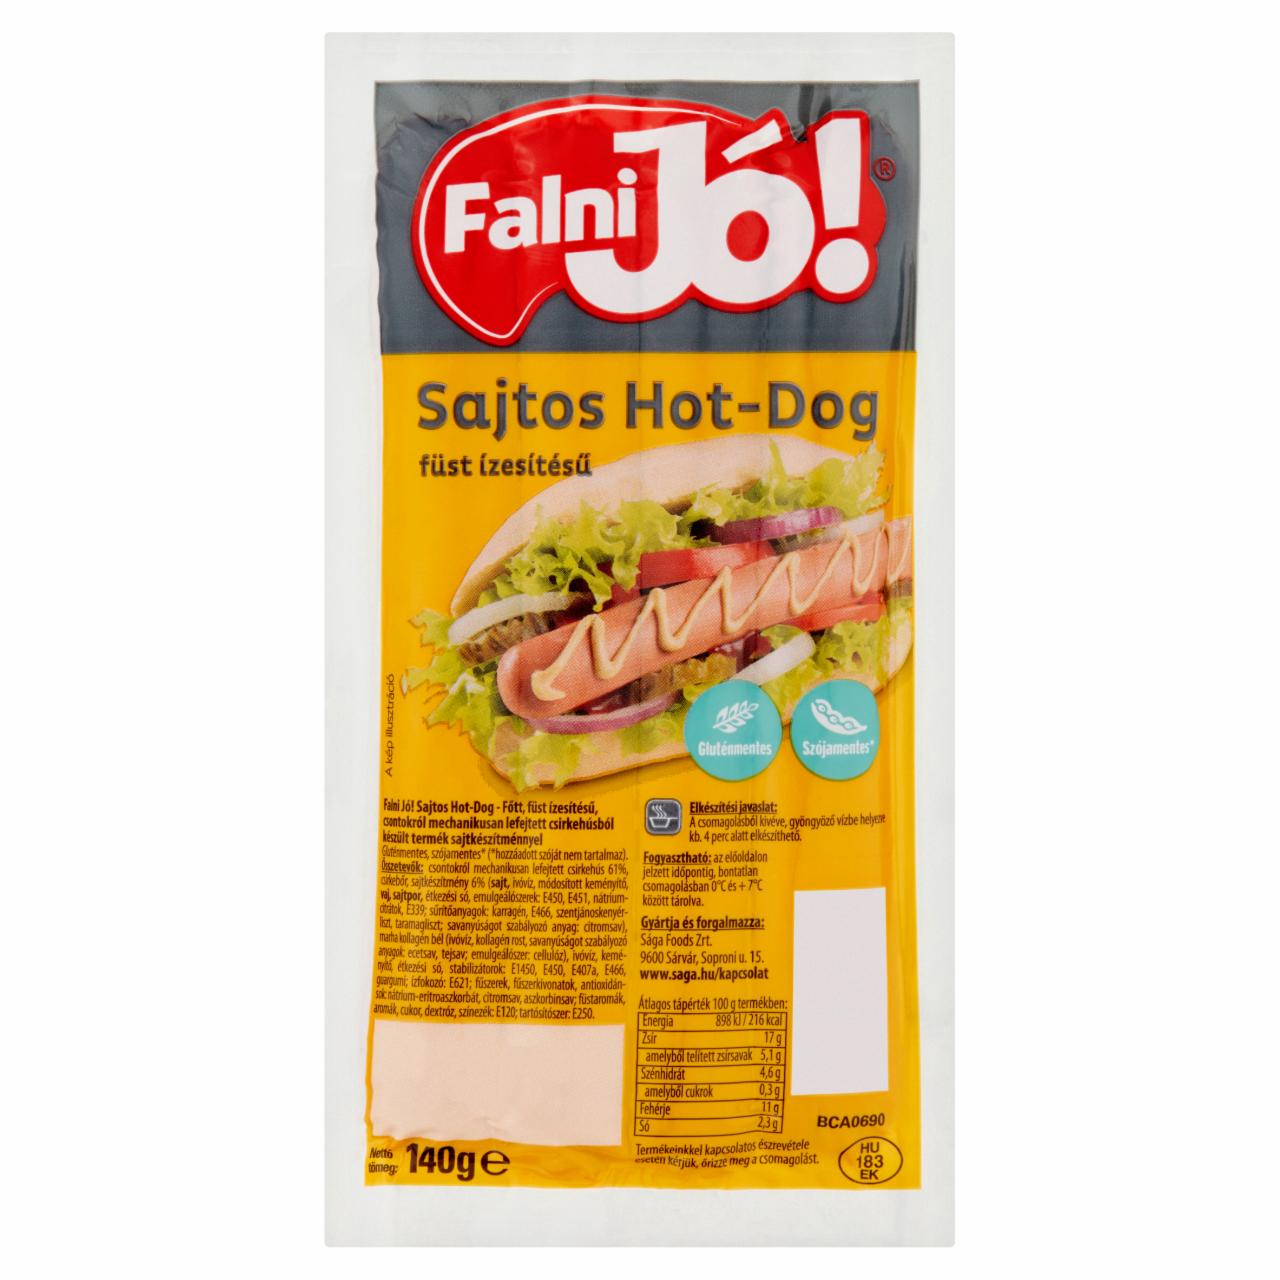 Képek - Füst ízesítésű sajtos hot-dog Falni Jó!